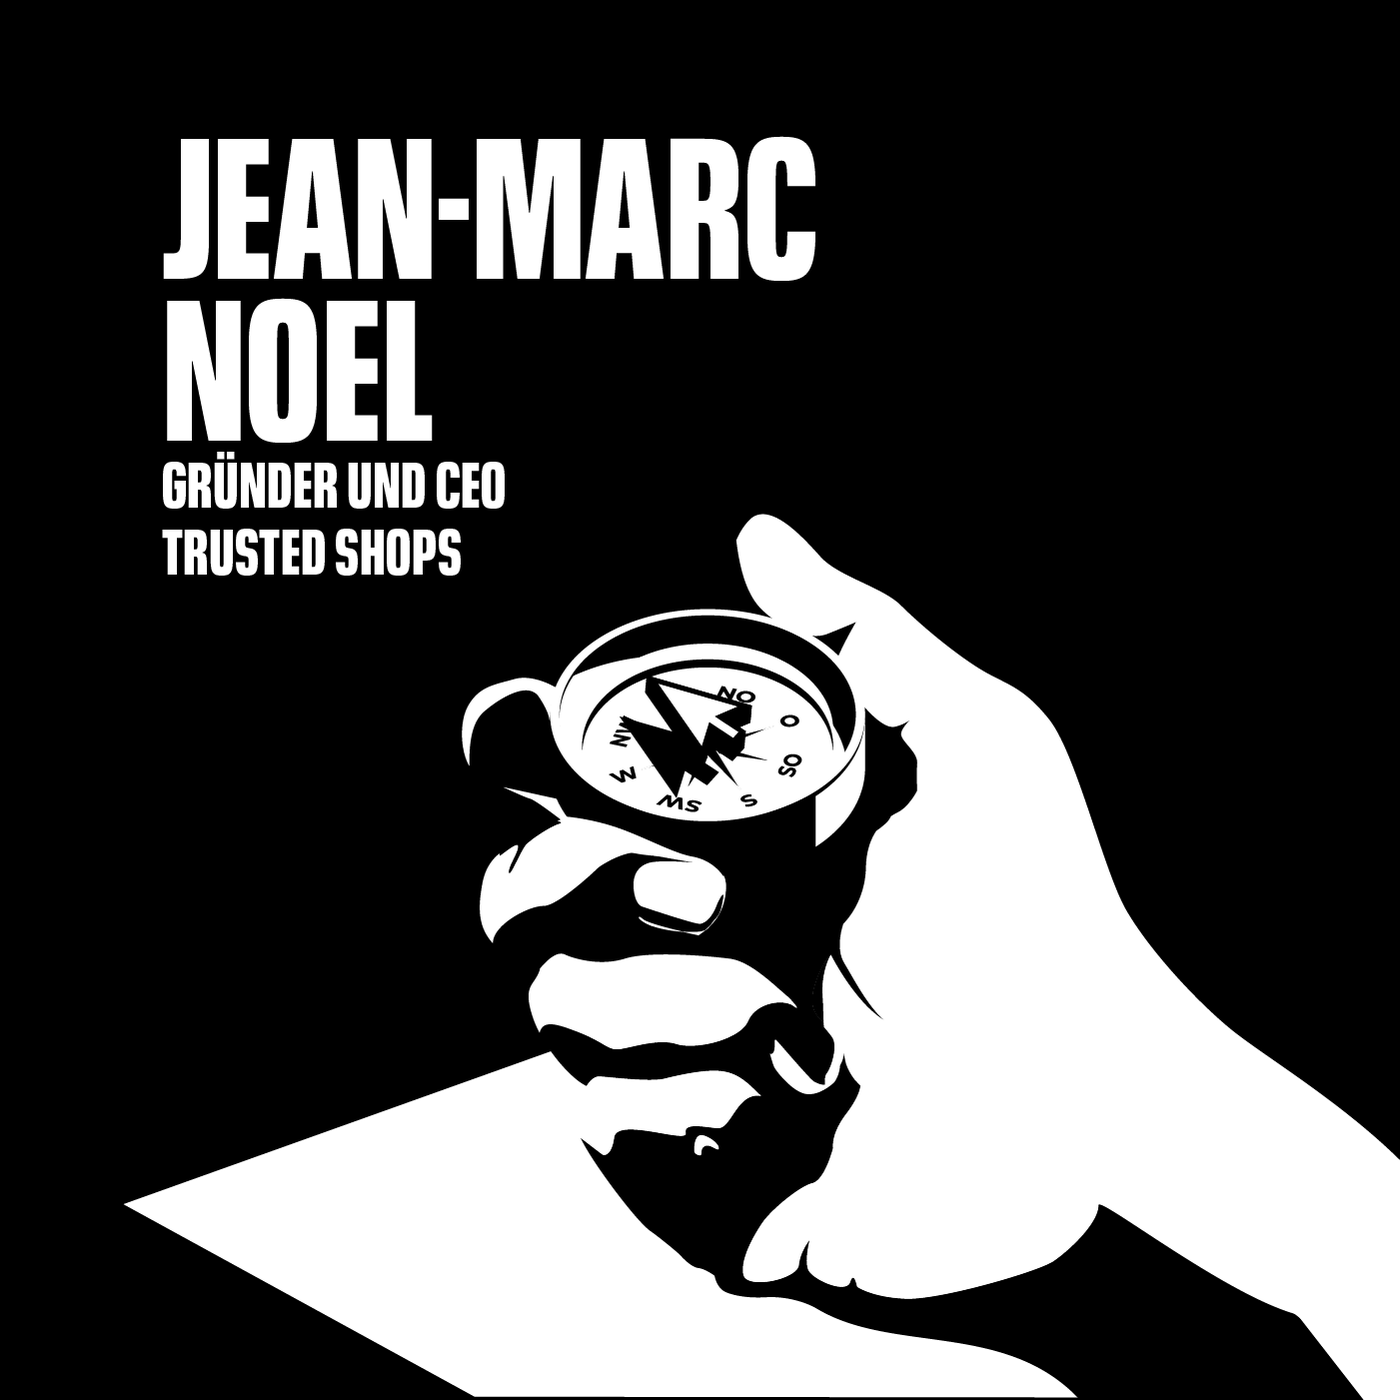 Trusted Shops Gründer und CEO. Jean-Marc Noel.